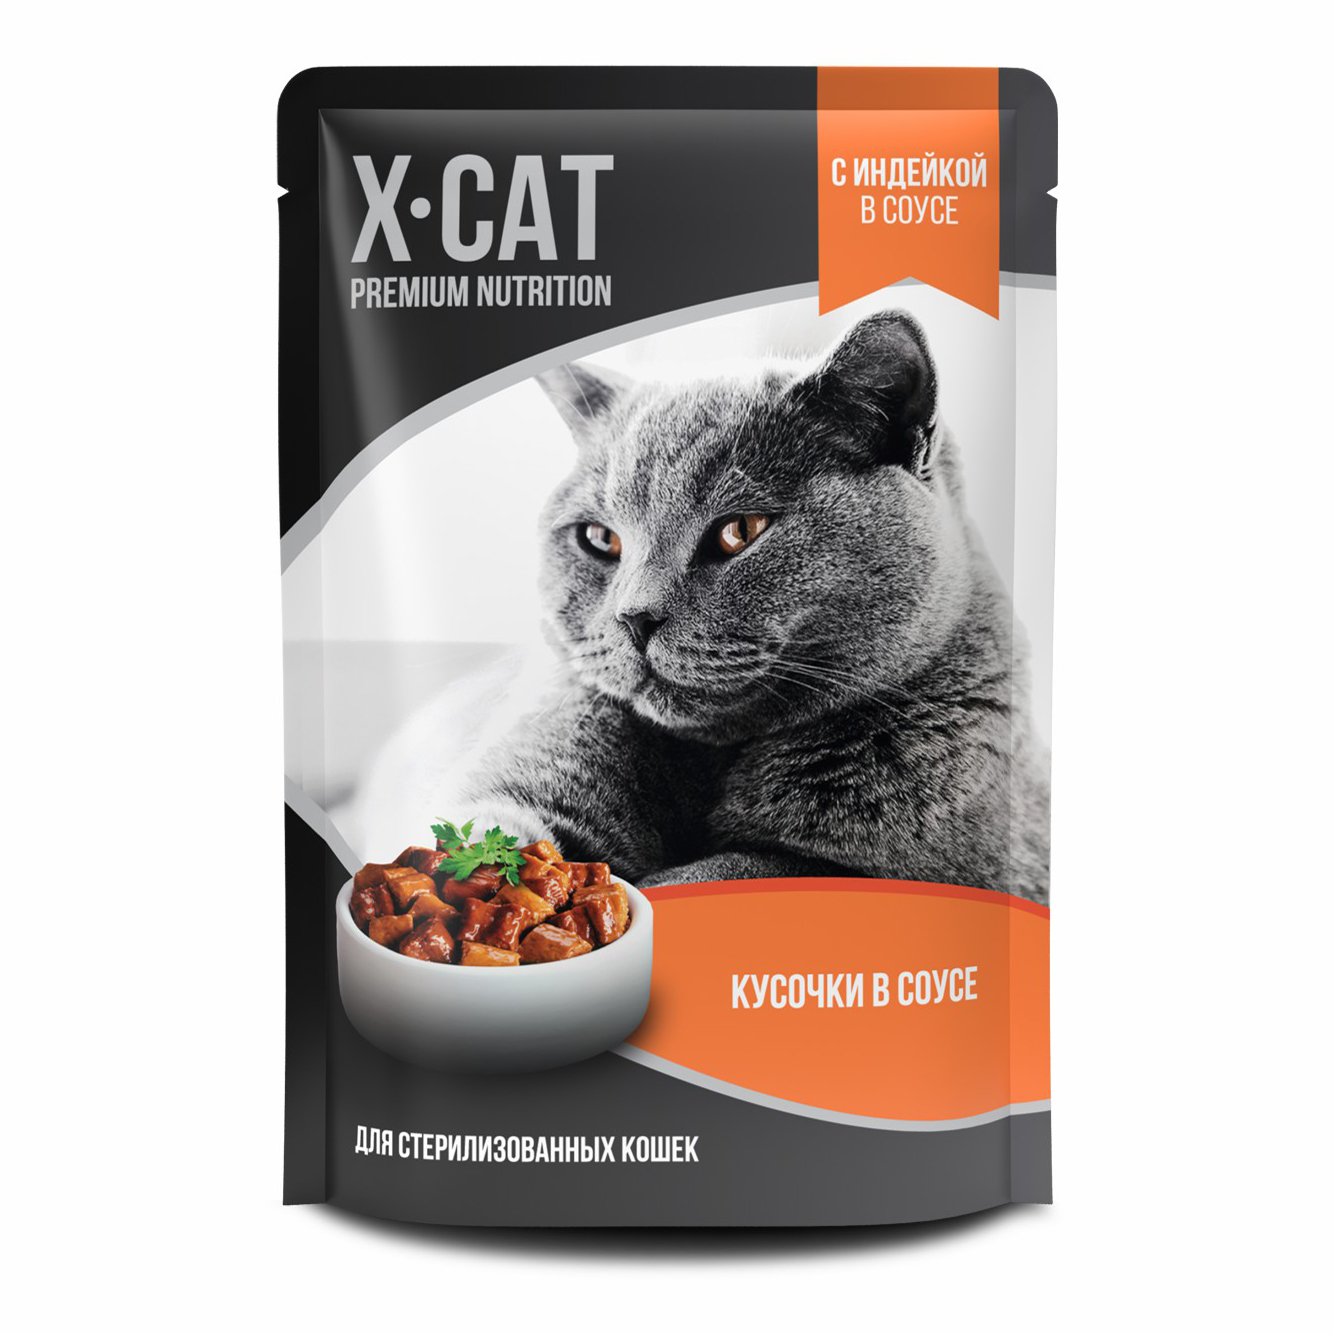 Влажный корм для кошек X-Cat Premium Nutrition, индейка в соусе, для стерилизованных, 85г